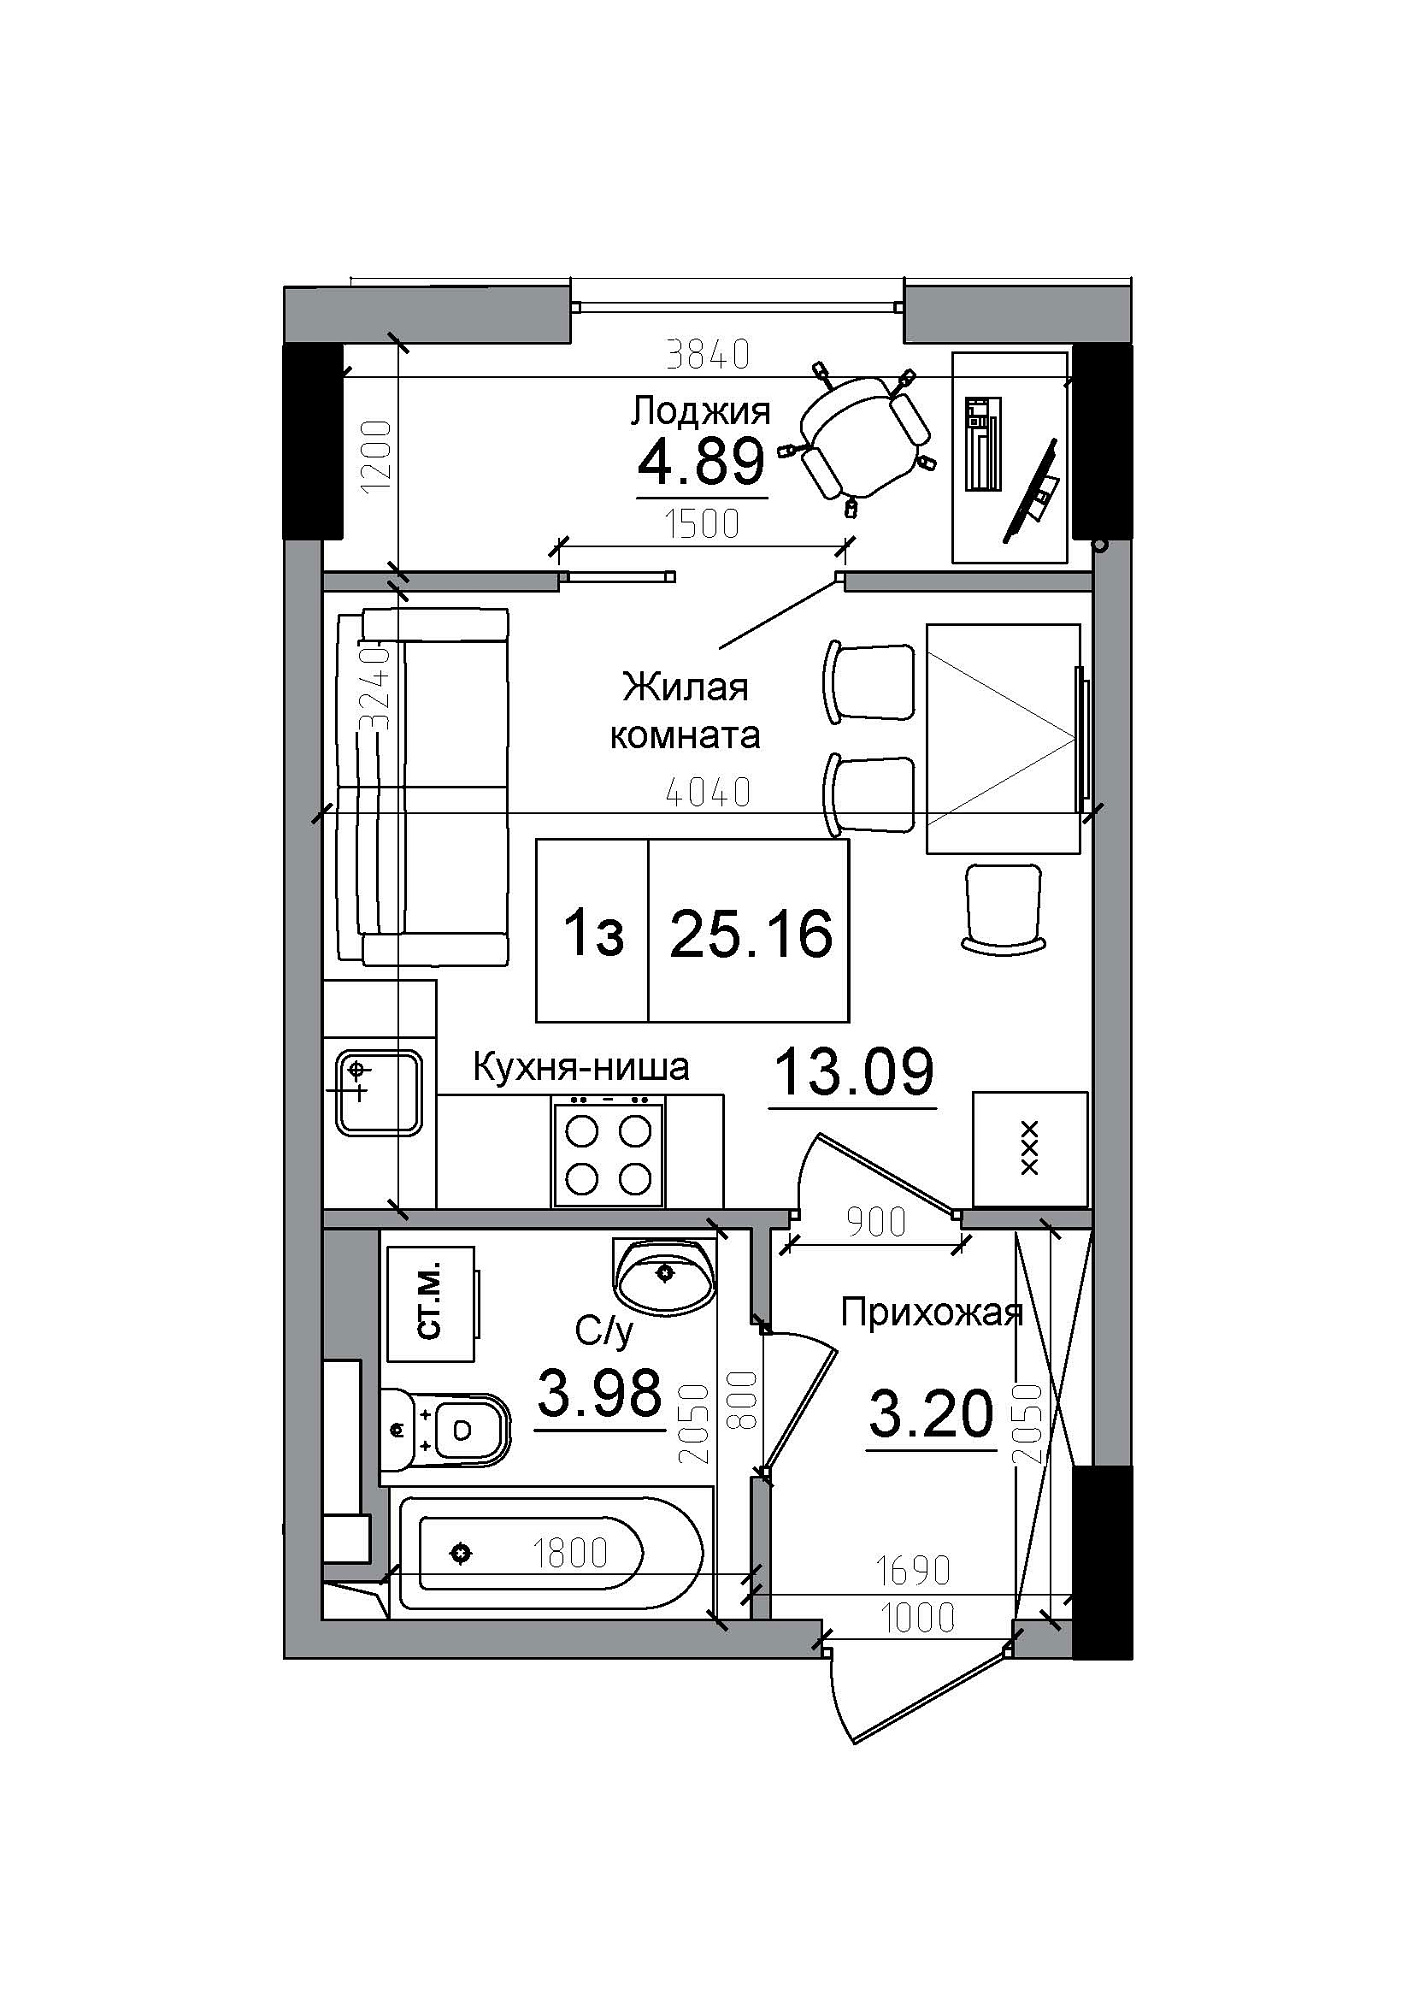 Планування Smart-квартира площею 25.16м2, AB-12-03/00009.